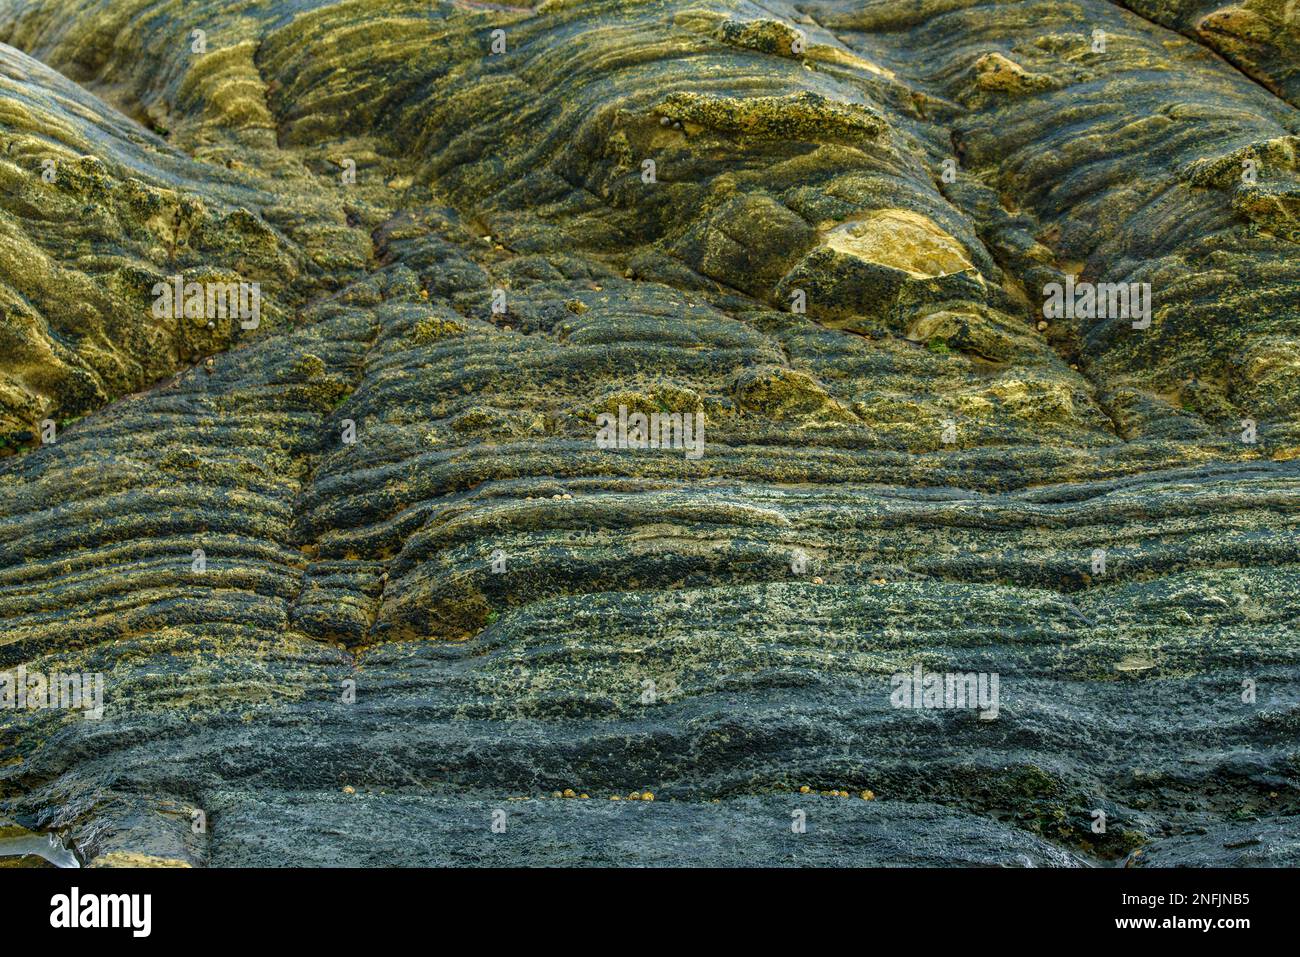 Diese Nahaufnahme von Felsen zeigt die raue, natürliche Schönheit der geologischen Formationen. Die rauen Oberflächen und Strukturen der Felsen sind Promi Stockfoto